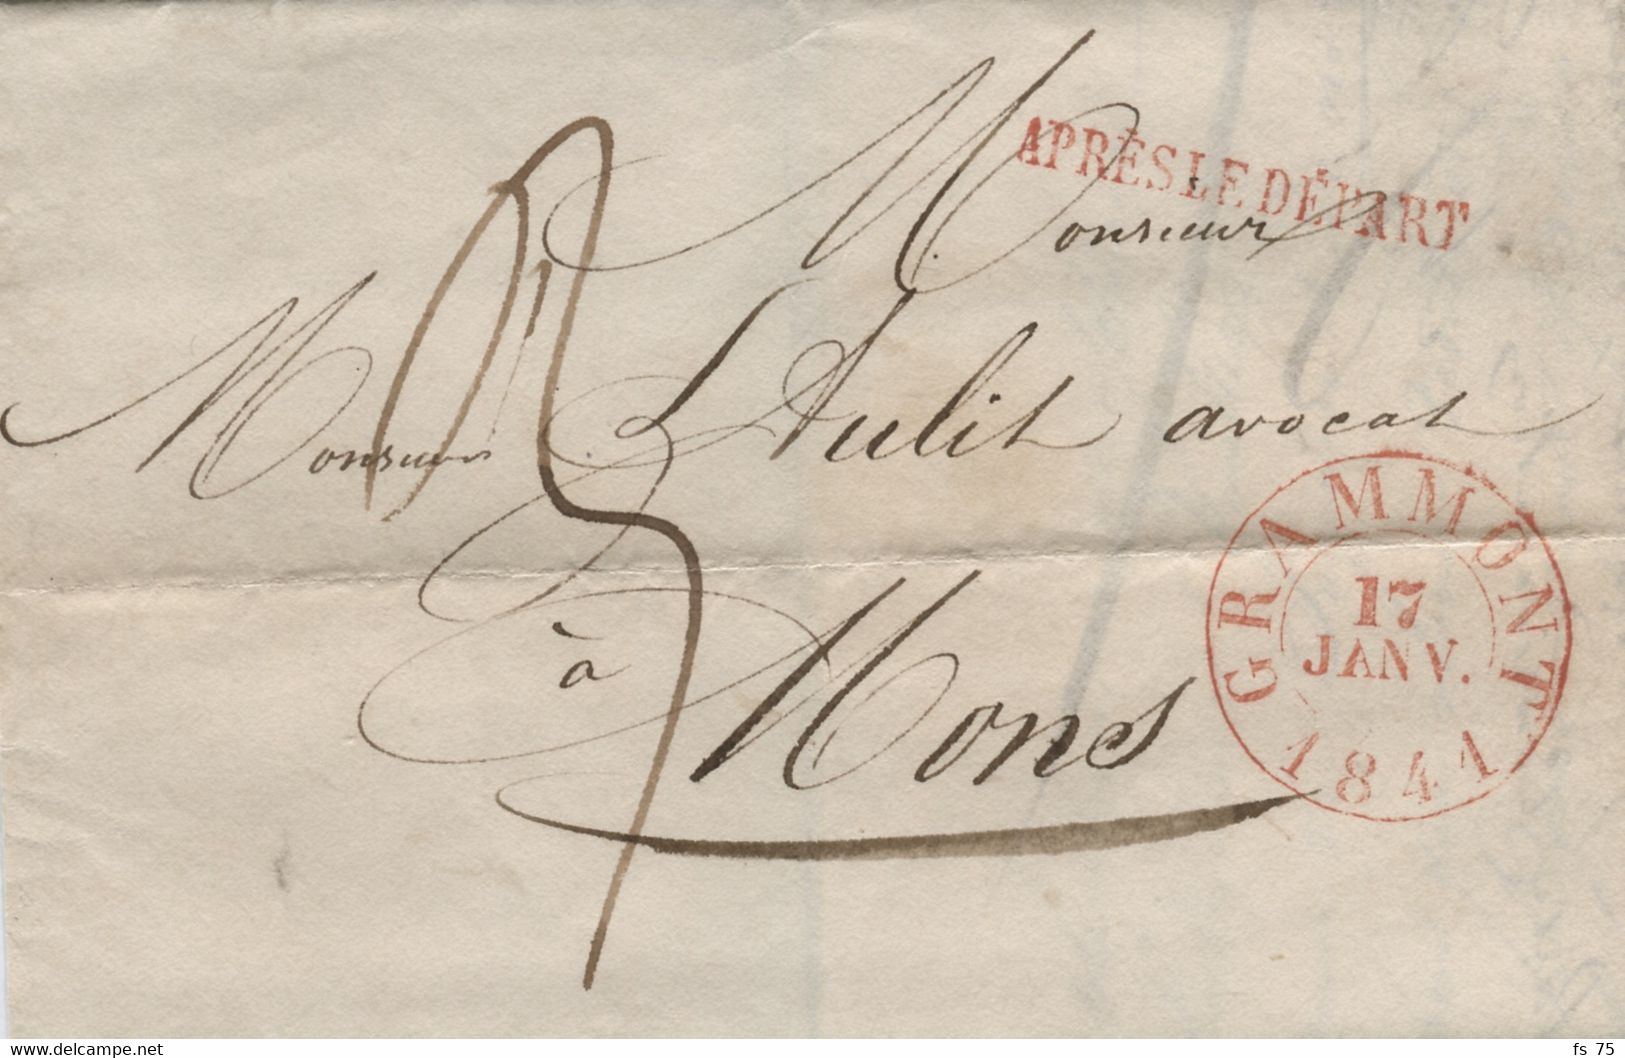 BELGIQUE - GRAMMONT + APRES LE DEPART SUR LETTRE SANS CORRESPONDANCE, 1841 - 1830-1849 (Unabhängiges Belgien)